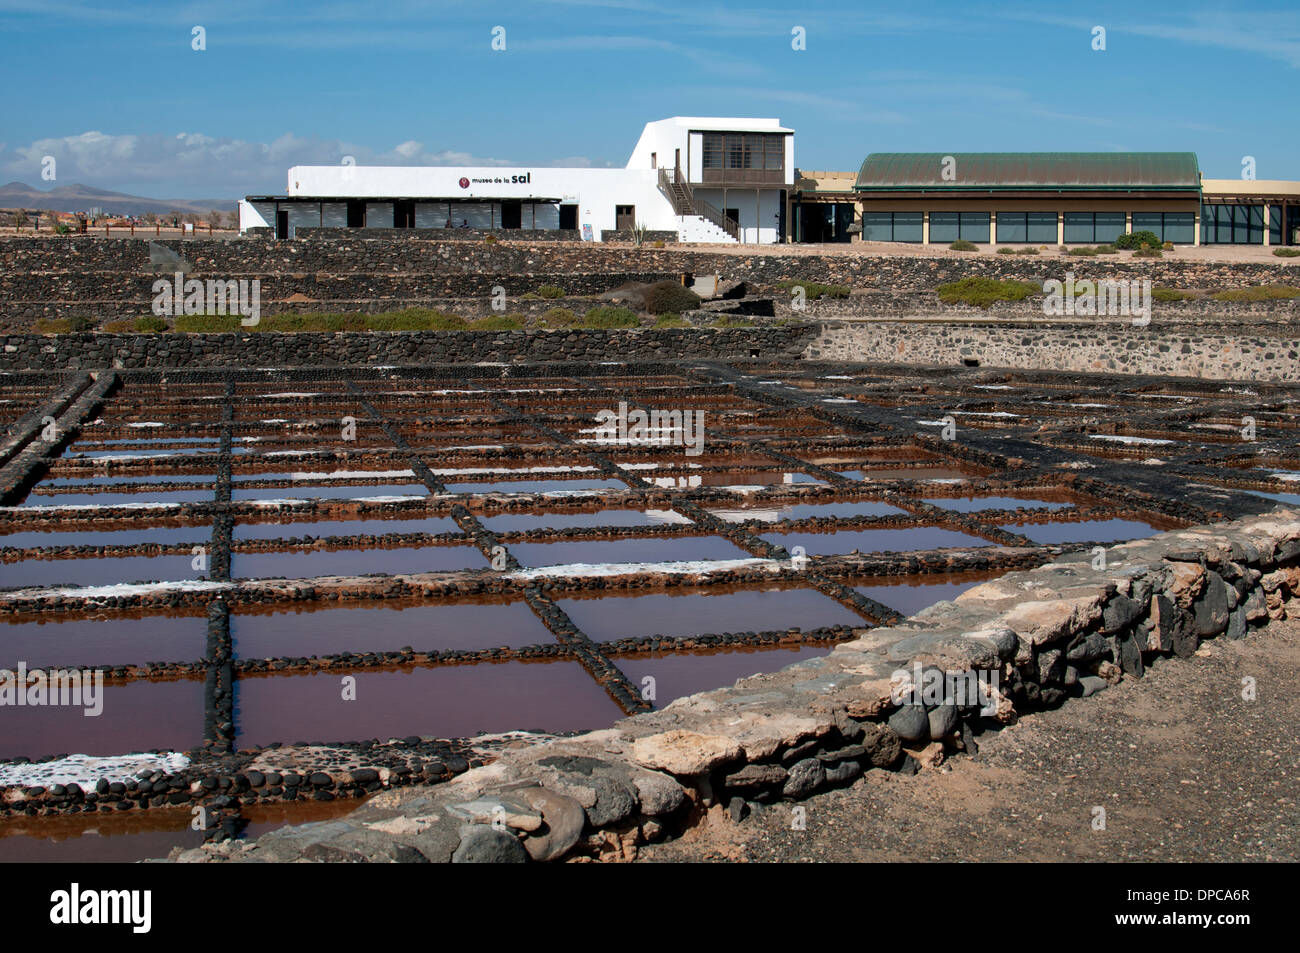 Salt museum near Caleta de Fuste, Fuerteventura, Canary Islands, Spain. Stock Photo